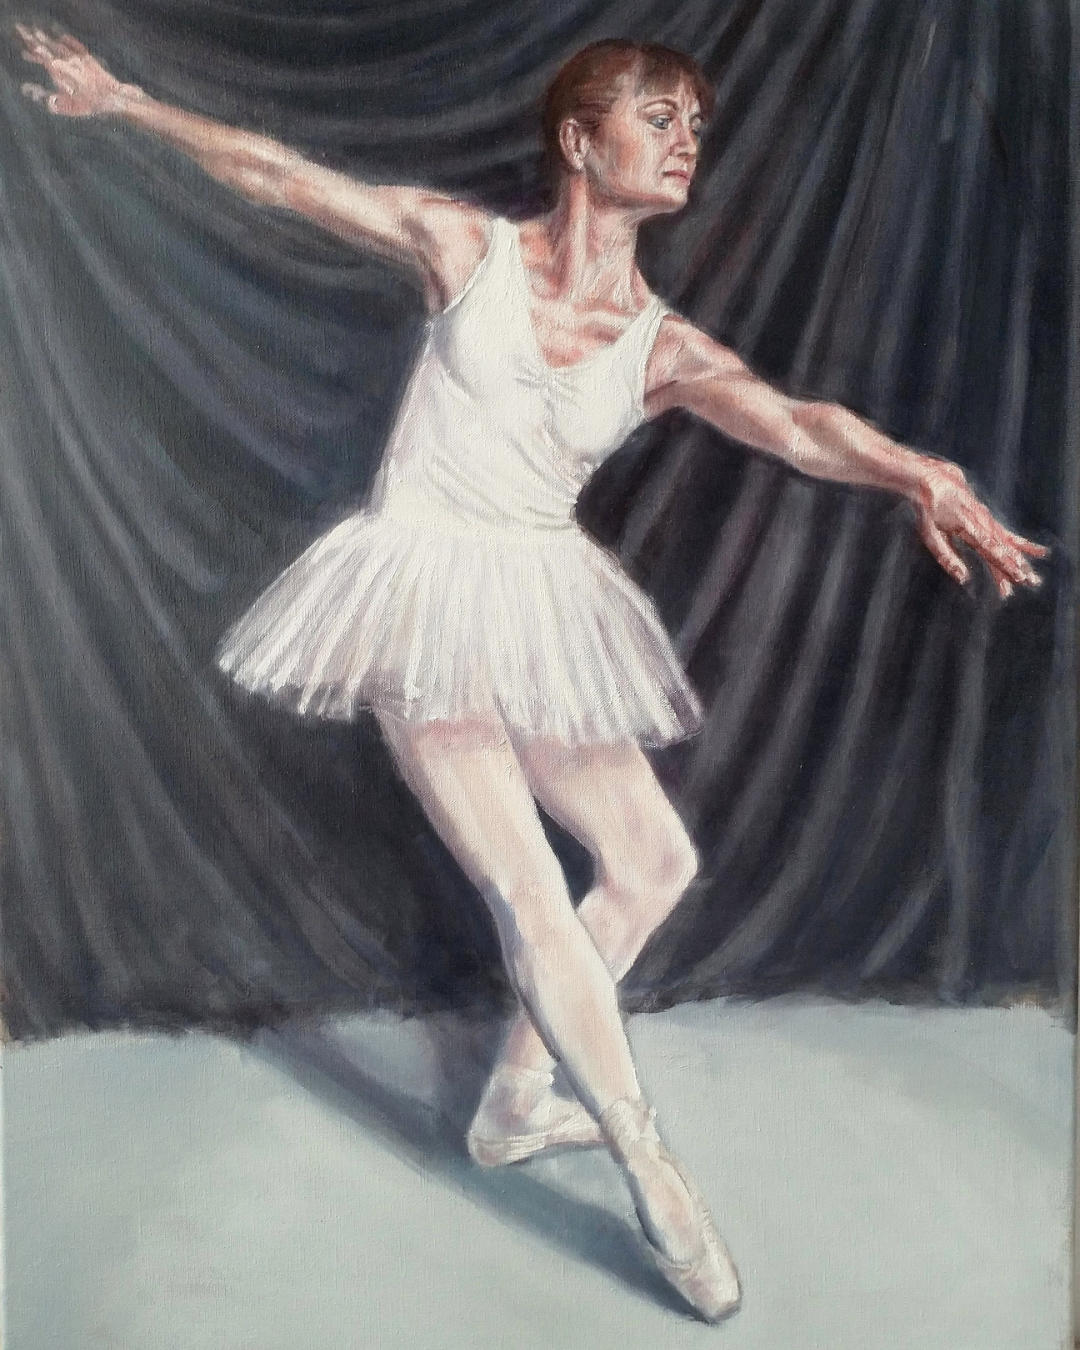 portrait commission of a ballet dancer